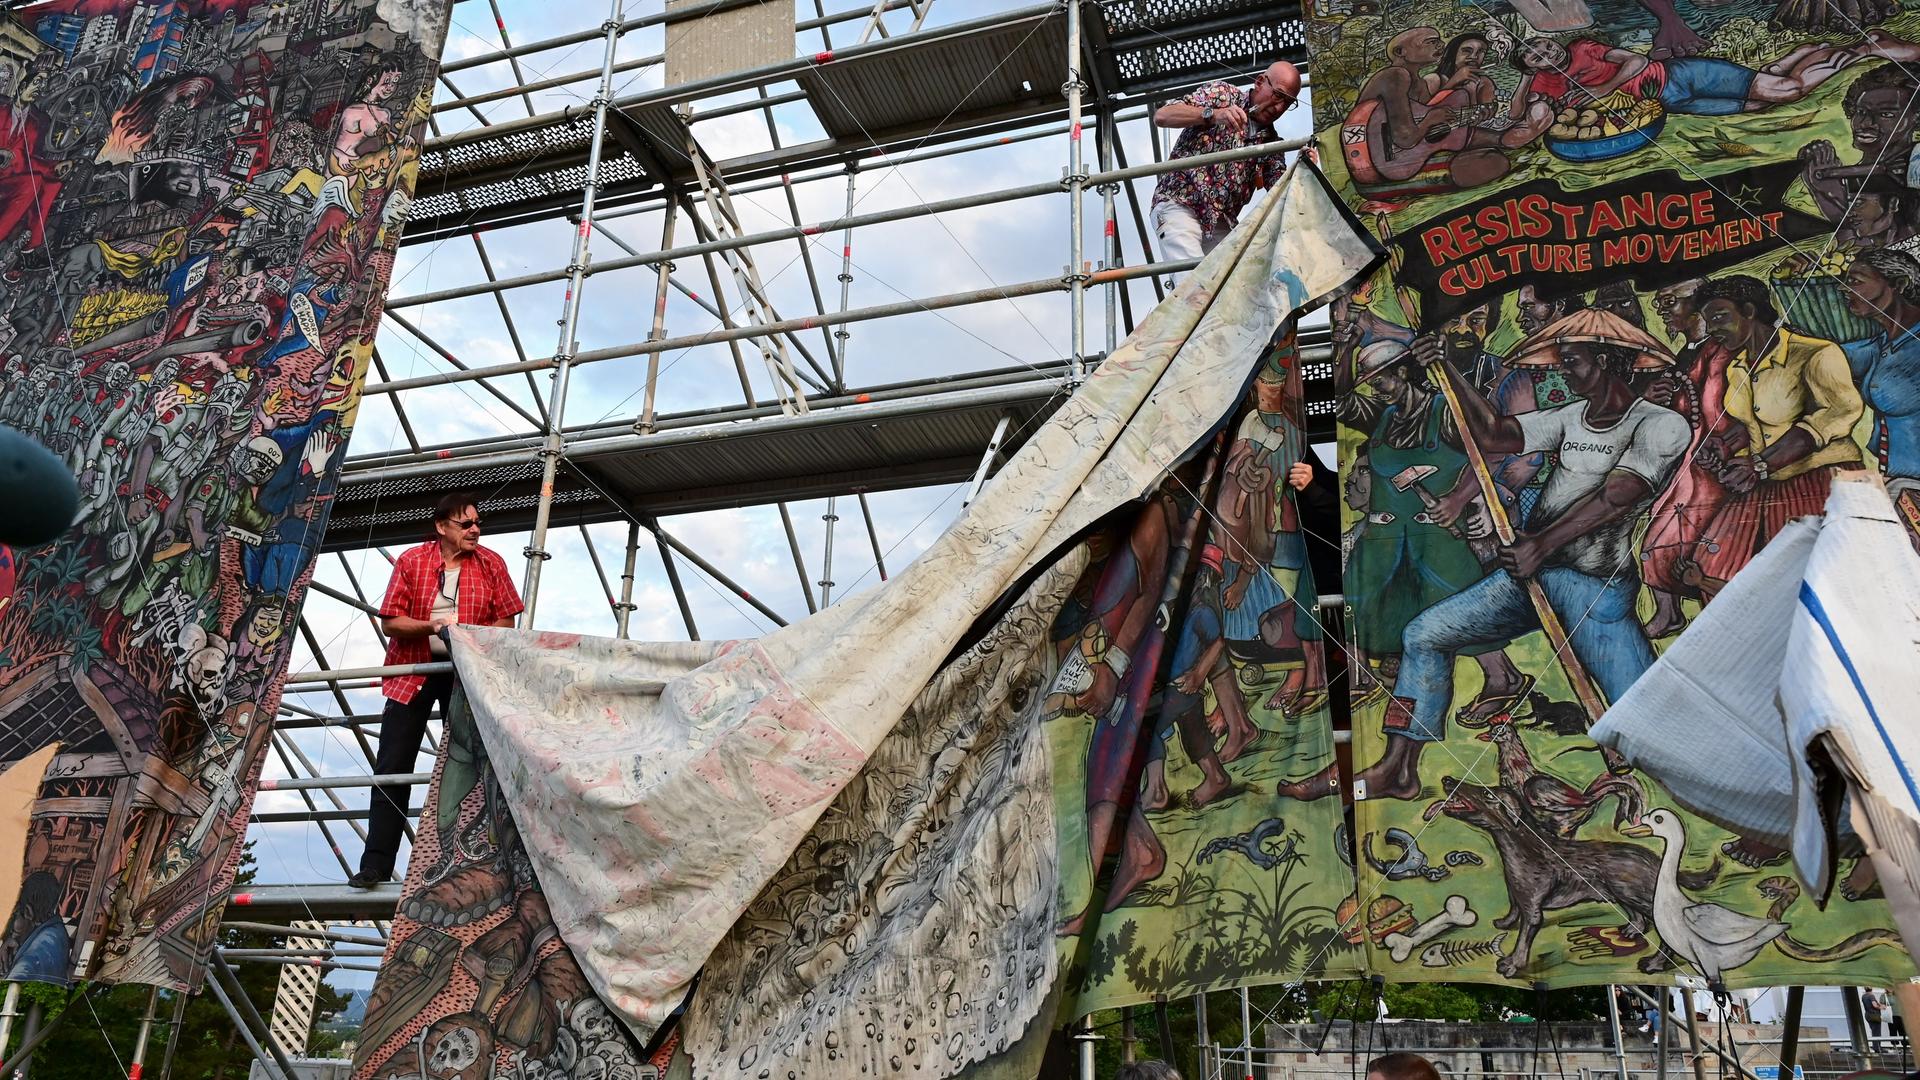 Documenta-Mitarbeiter bauen das umstrittene Großbanner "People's Justice" des indonesischen Künstlerkollektivs Taring Padi auf dem Friedrichsplatz in Kassel ab.